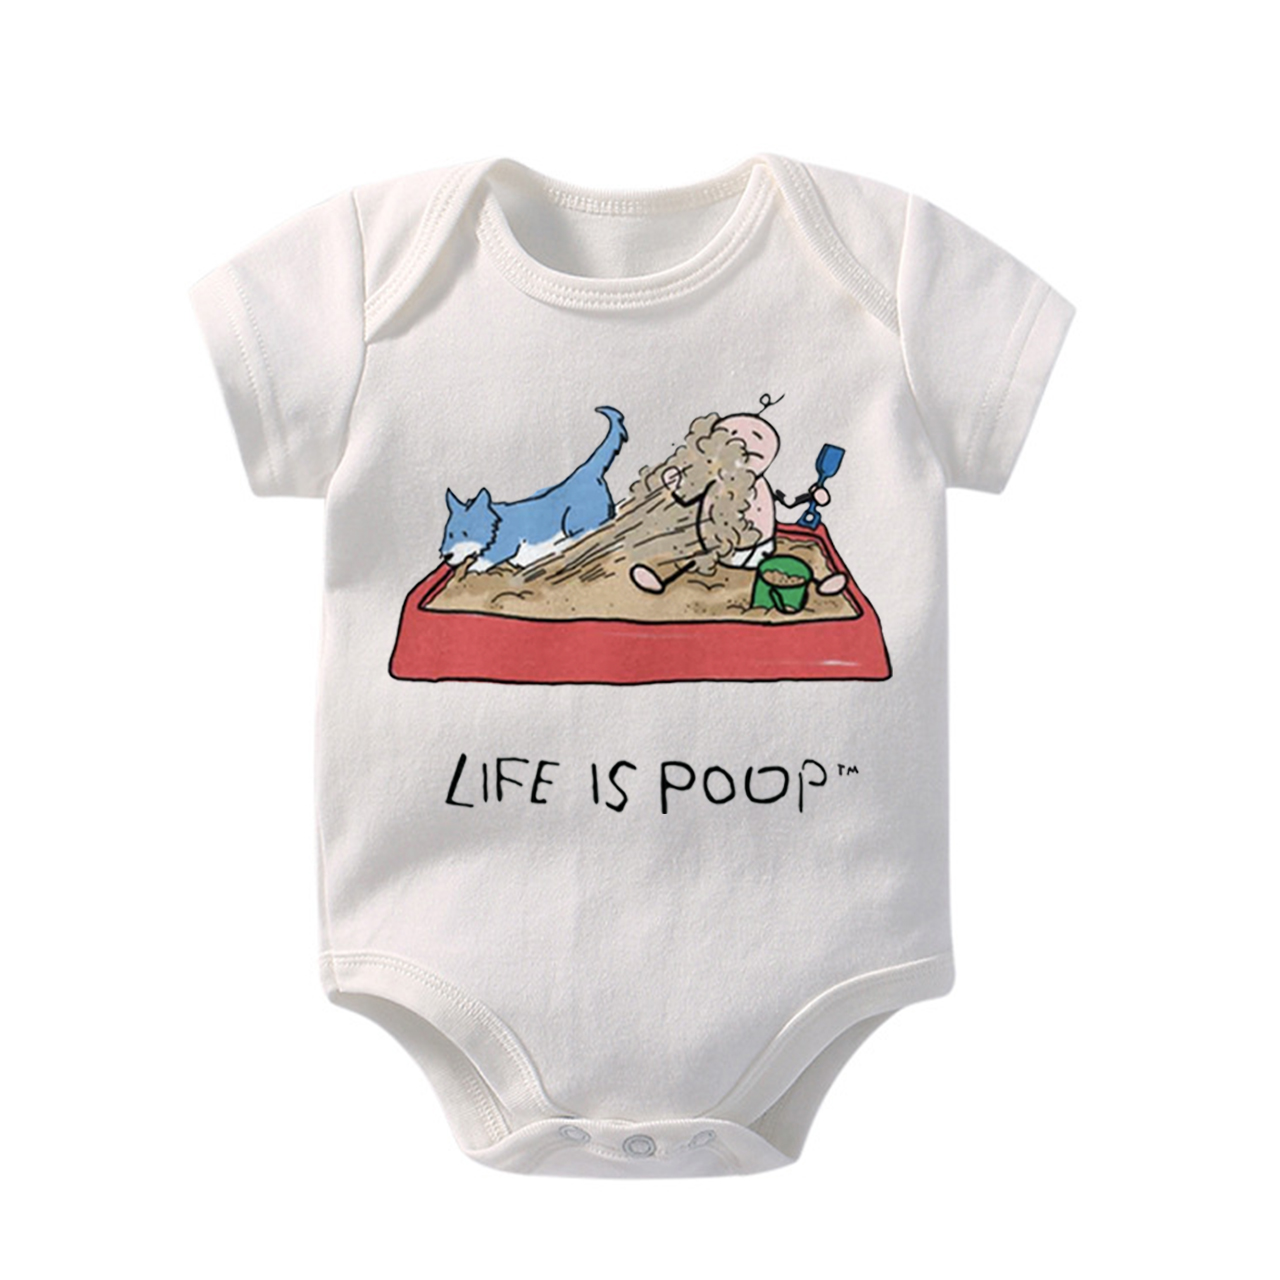 Life Is Poop Mud Bodysuit For Baby